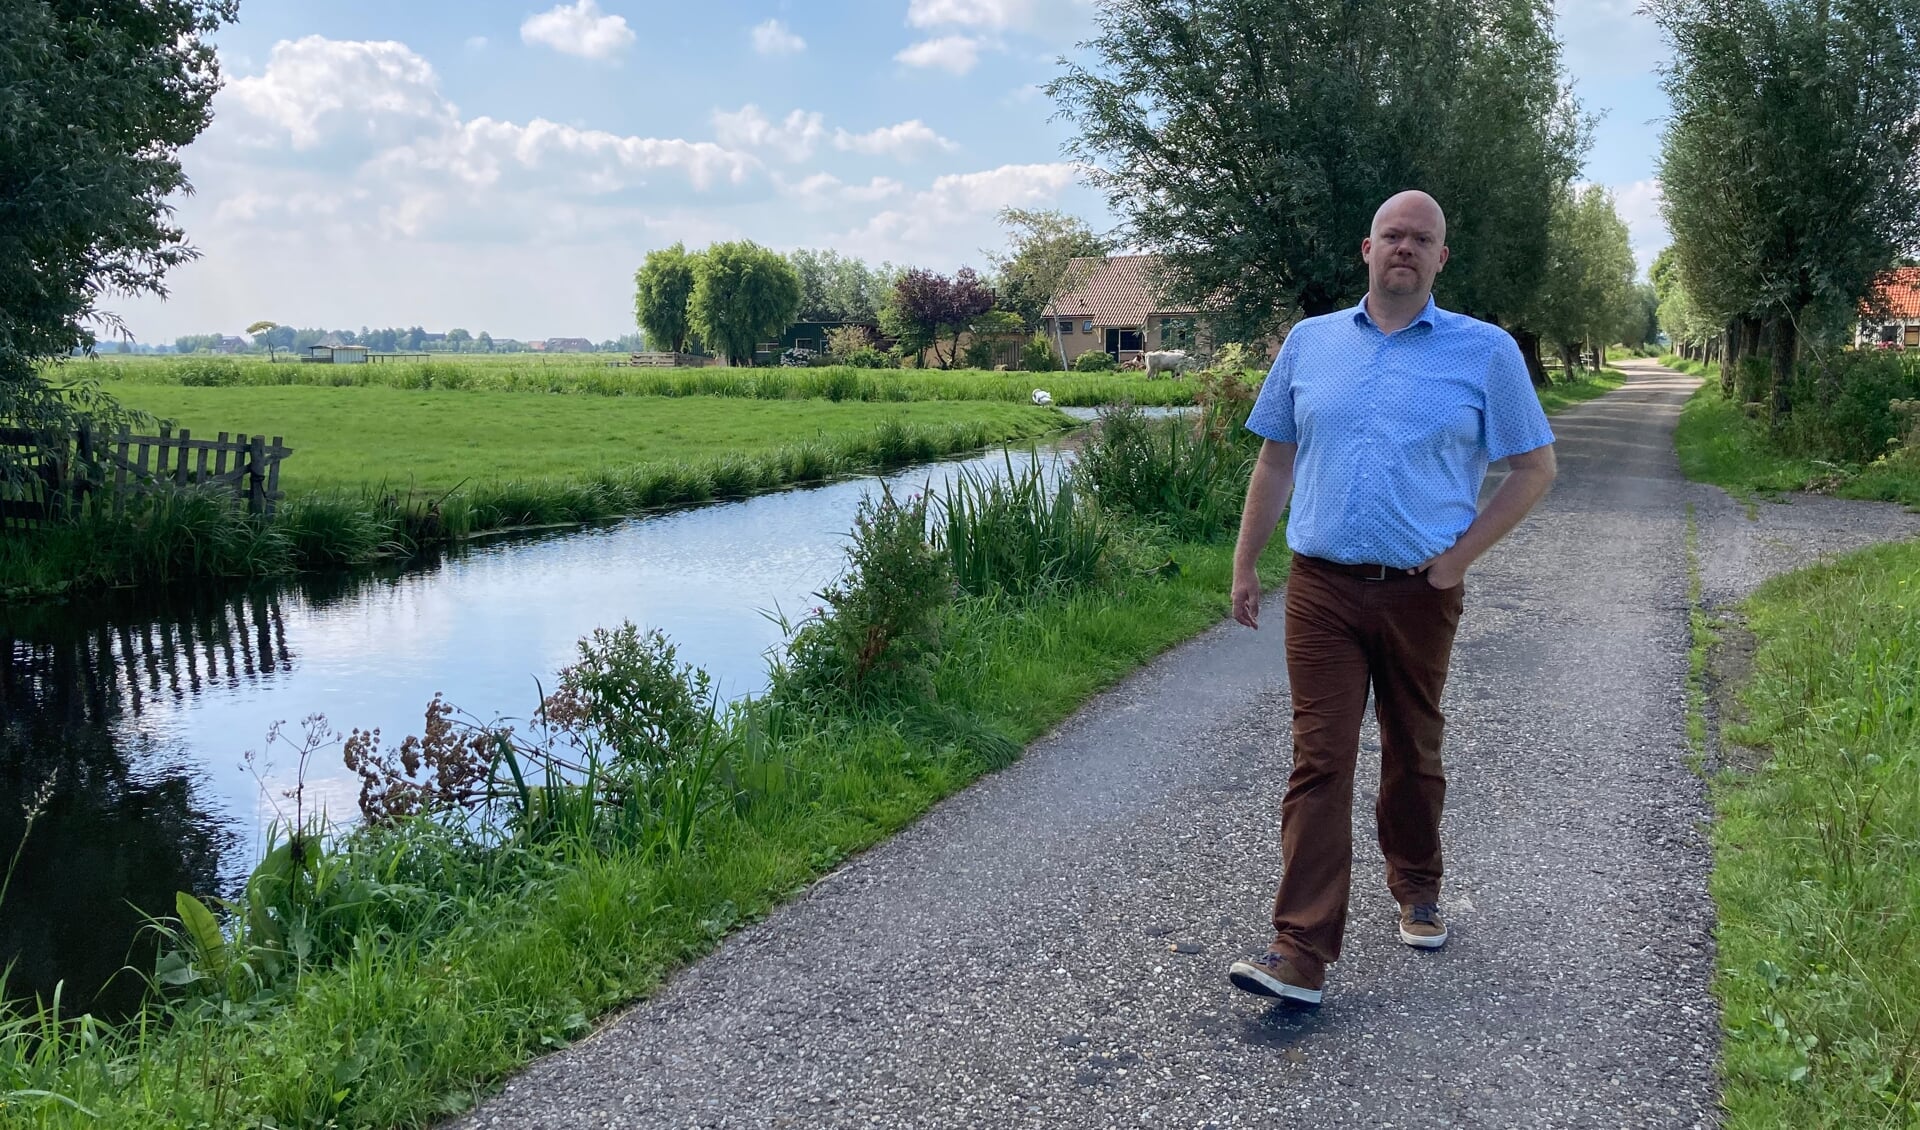 • Pascal van der Hek wandelend in het groene buitengebied van Bergambacht.